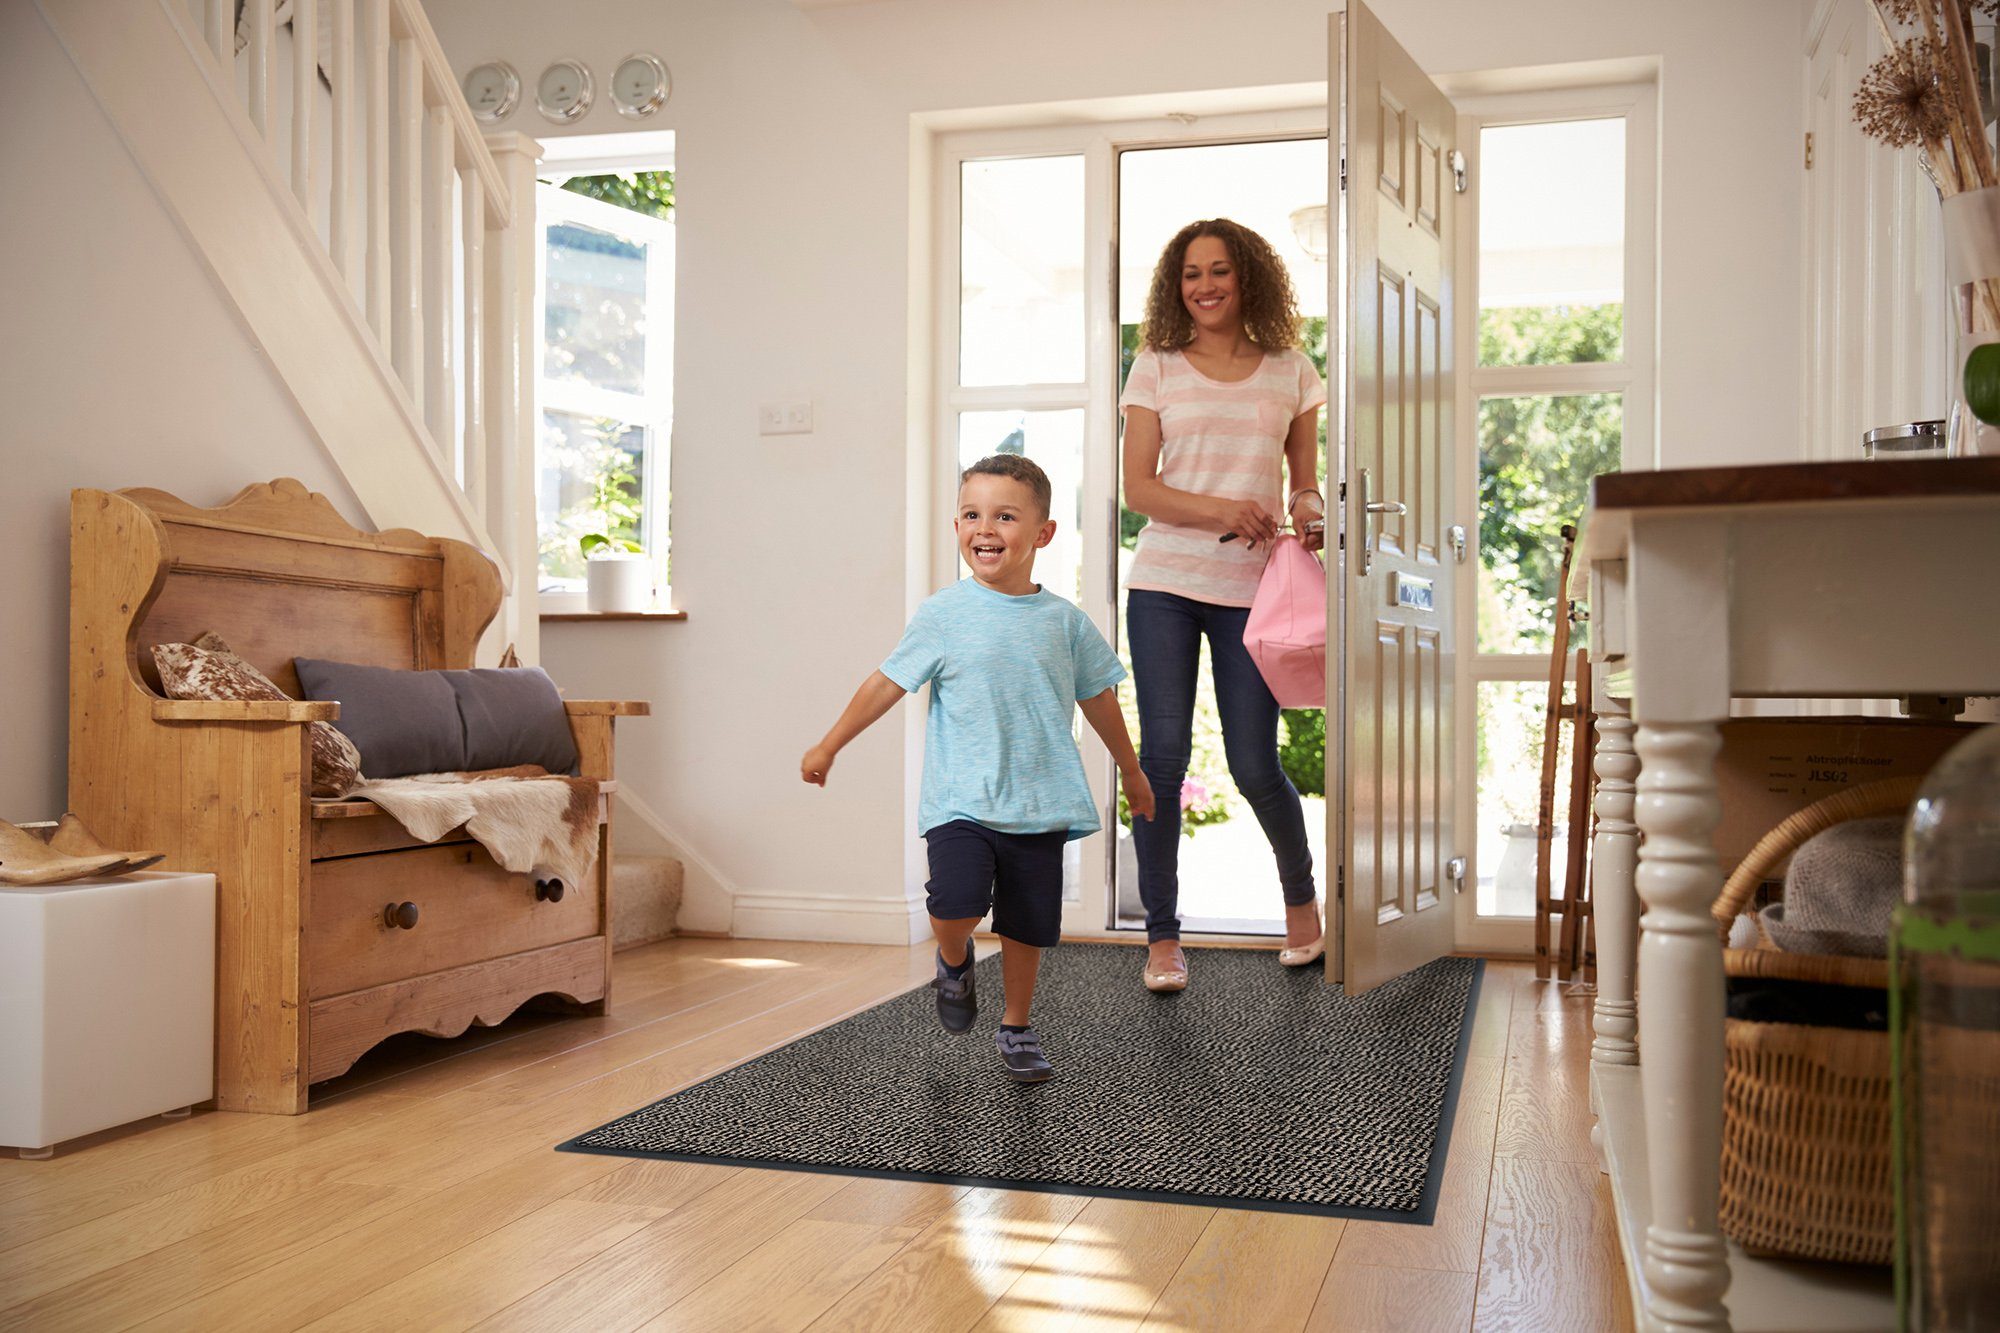 Fußmatte Rio, Carpet Diem, rechteckig, Beige-schwarz und Schmutzfangmatte, für  geeignet Innen- Außenbereich 7 mm, Höhe: überdachten